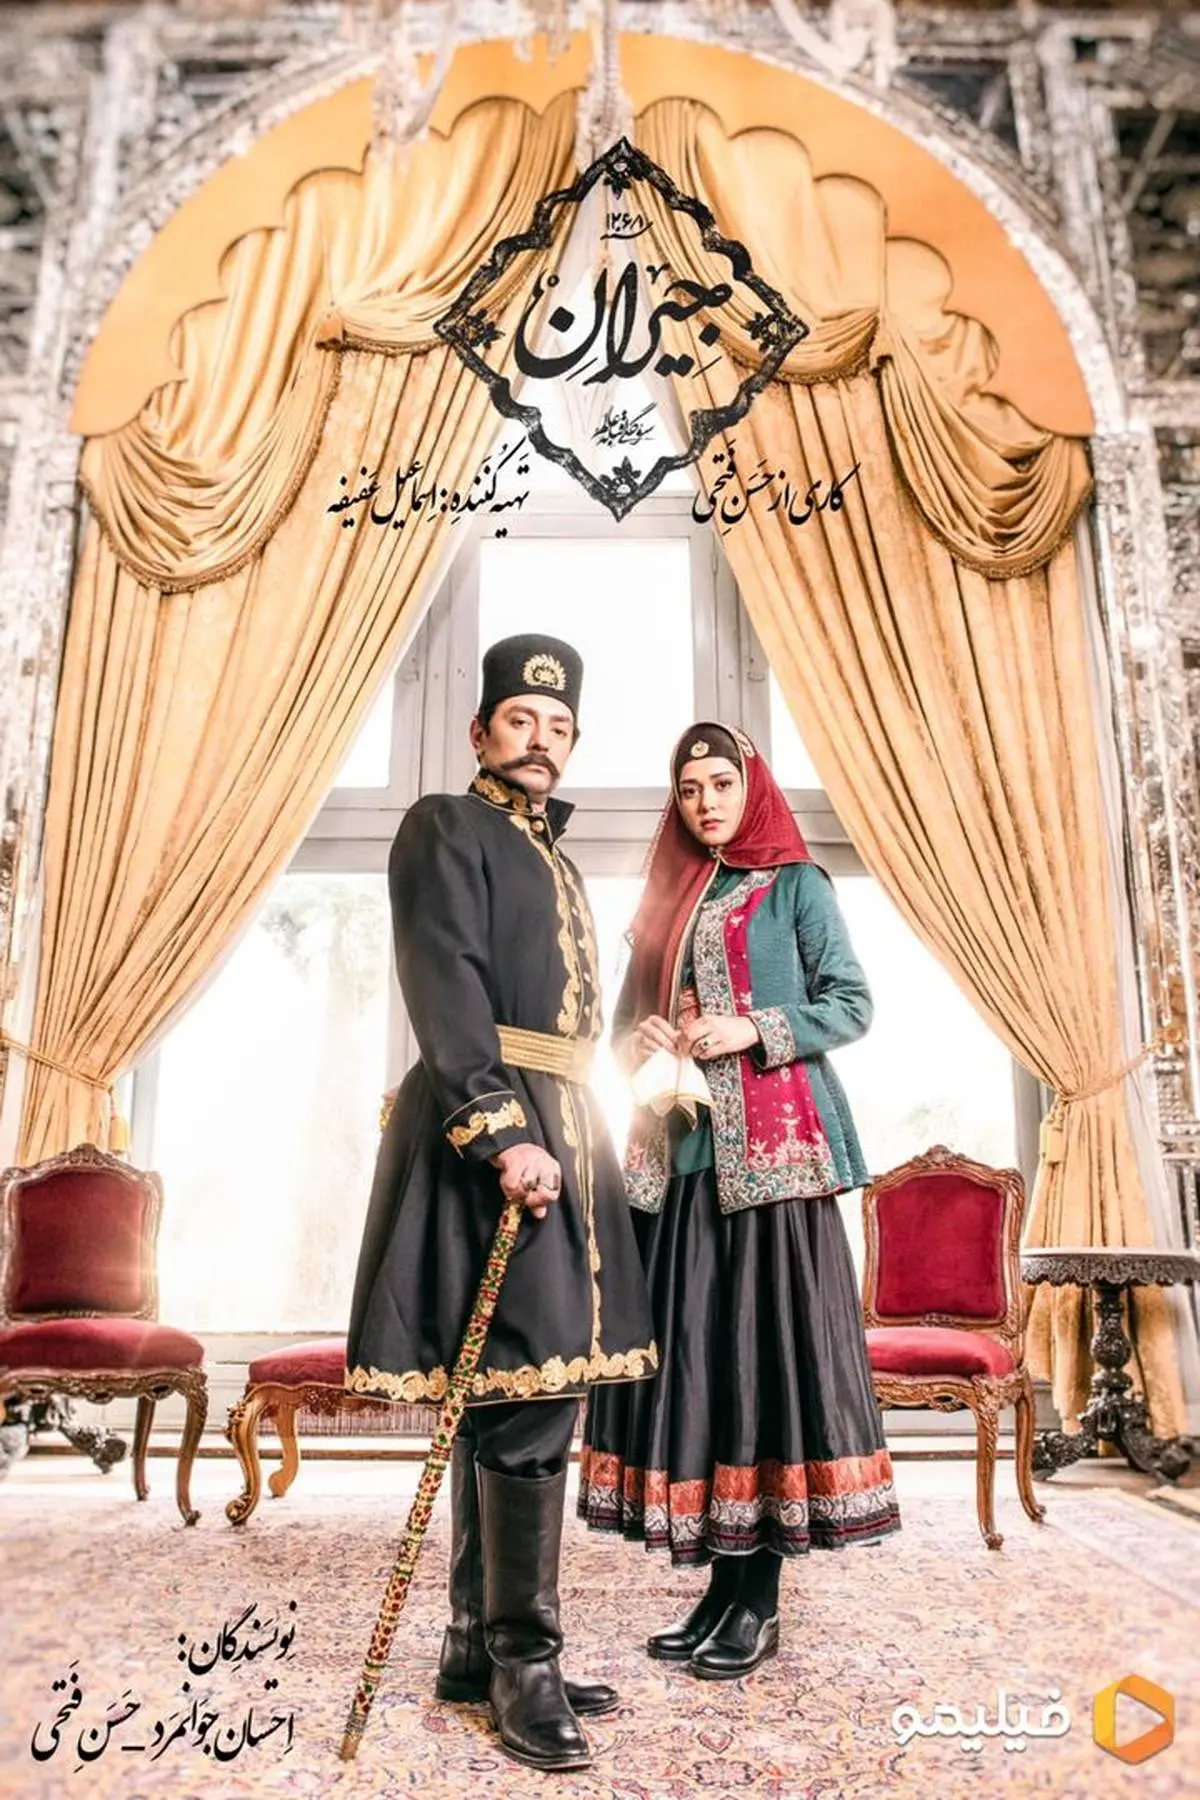 رونمایی از نخستین تصویر «جیران»/ بهرام رادان و پریناز ایزدیار در عاشقانه ای از حسن فتحی

